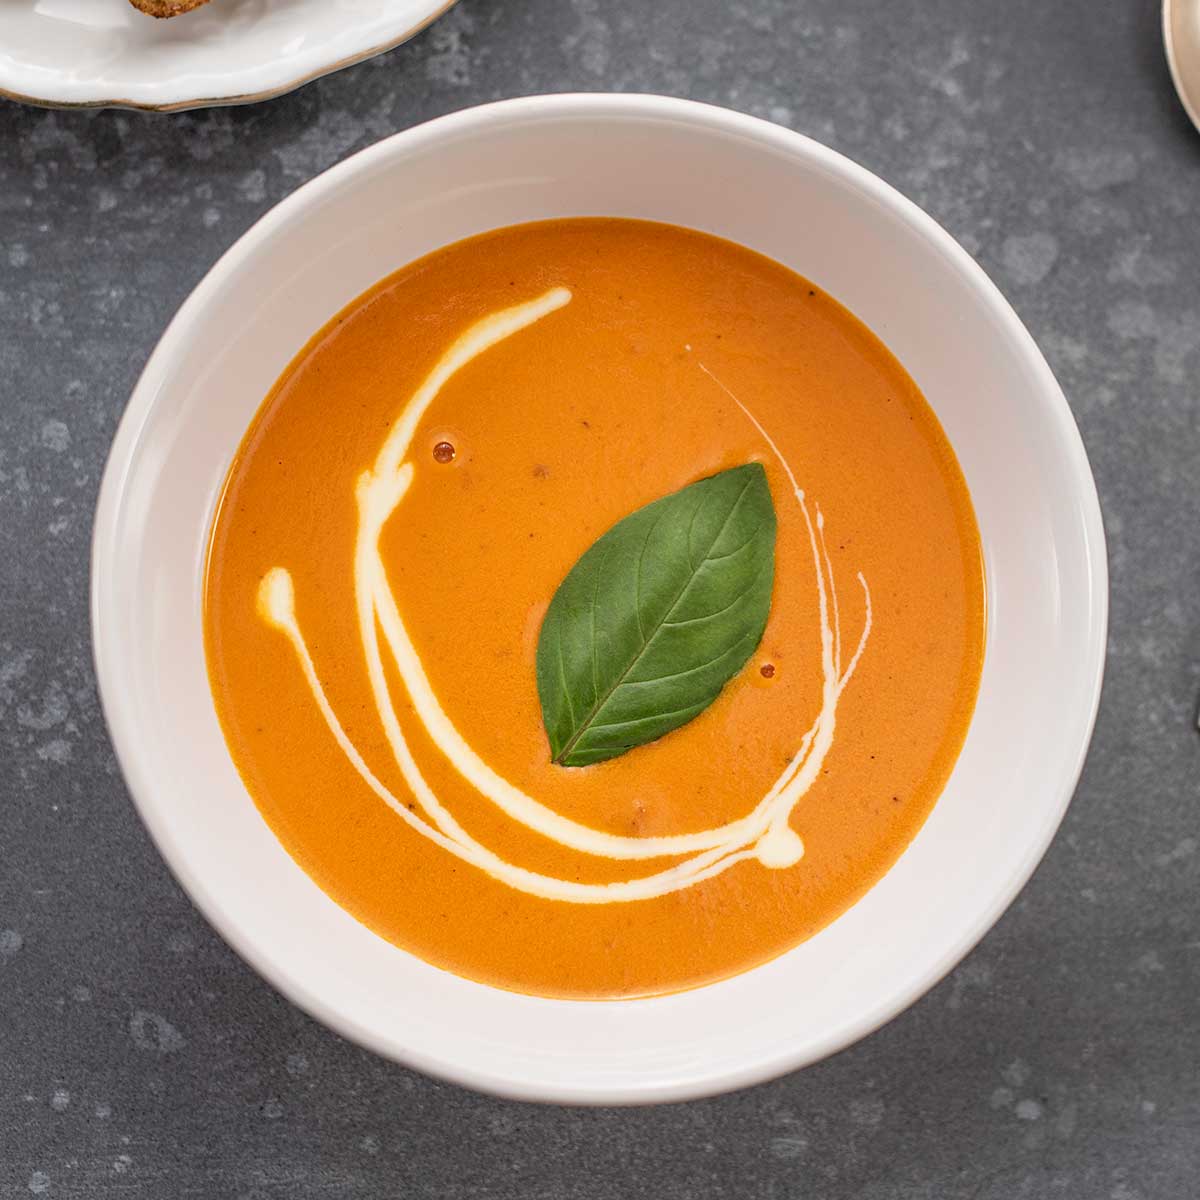 ซุปมะเขือเทศ พร้อมทาน ตราวัตตี้ส์ นำเข้าจากนิวซีแลนด์ 300 กรัม - Watties Soup for One Creamy Tomato 300g | Lazada.co.th